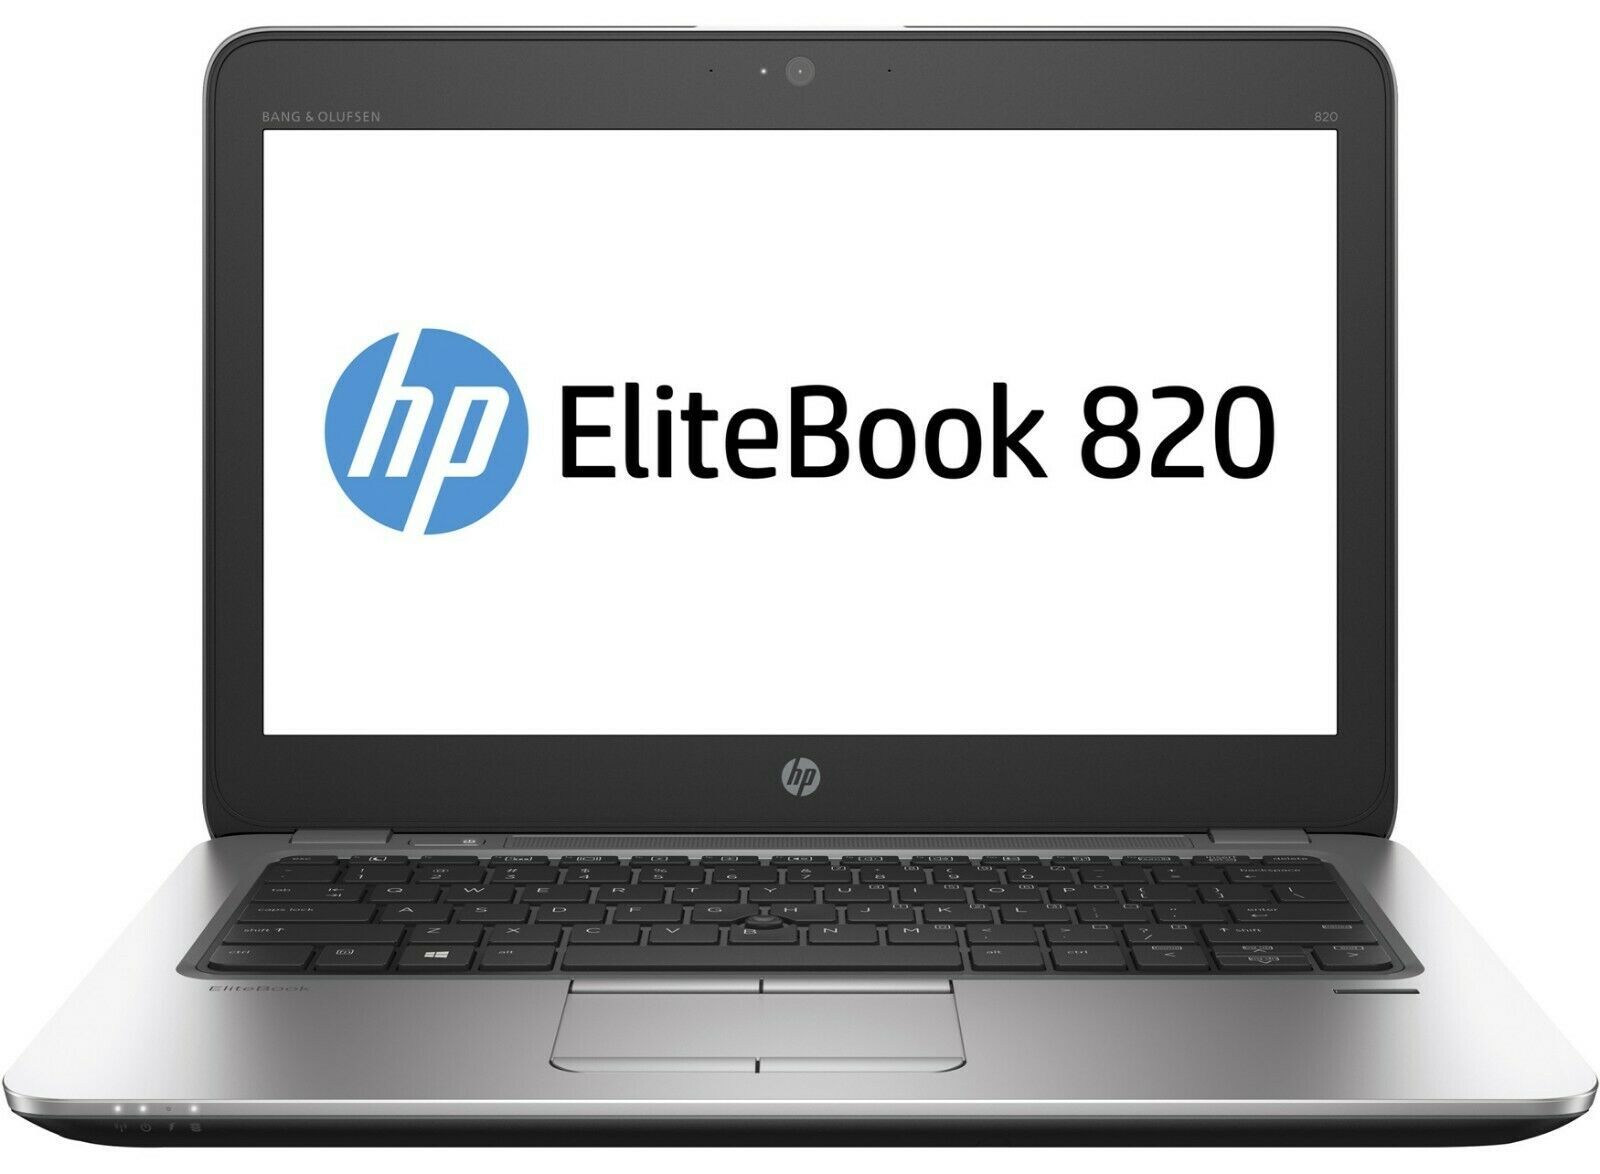 HP EliteBook 820 G3 Intel i7 6600U 2.60Ghz 4GB RAM 128GB SSD 12.5" Win 10